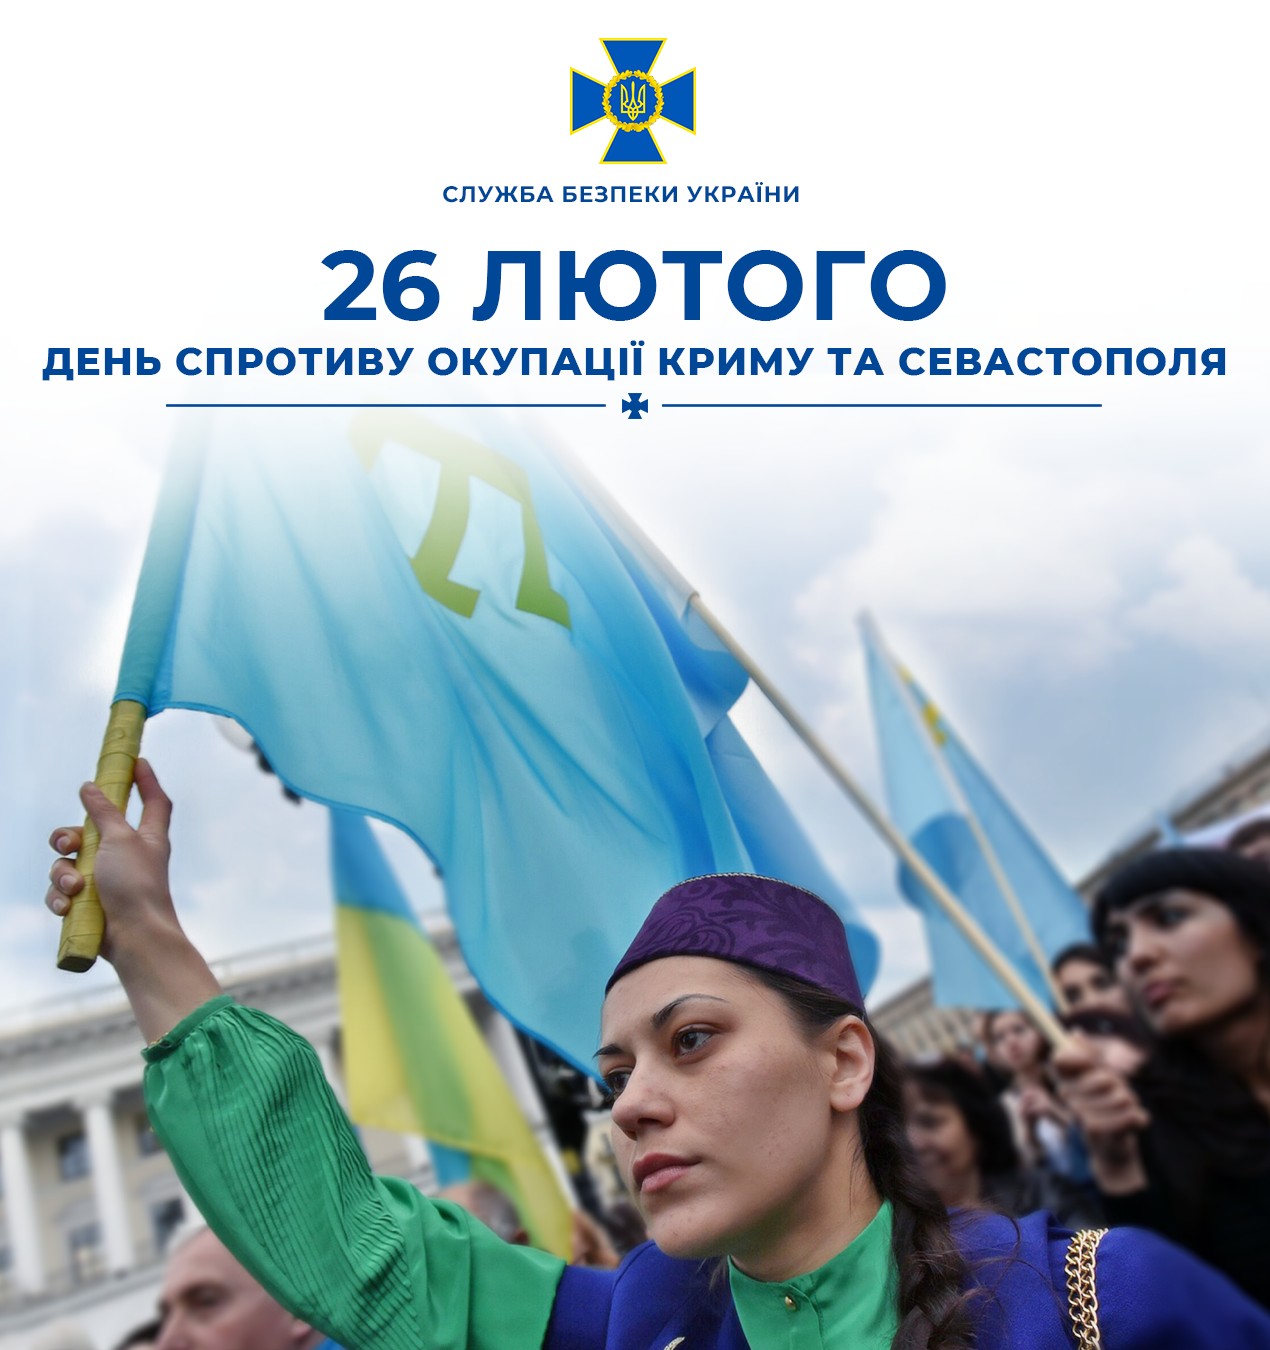 У цей день 10 років тому тисячі українців сказали окупантам в обличчя: «Крим – це Україна!», і мільйони підтримали нас по всьому світу.